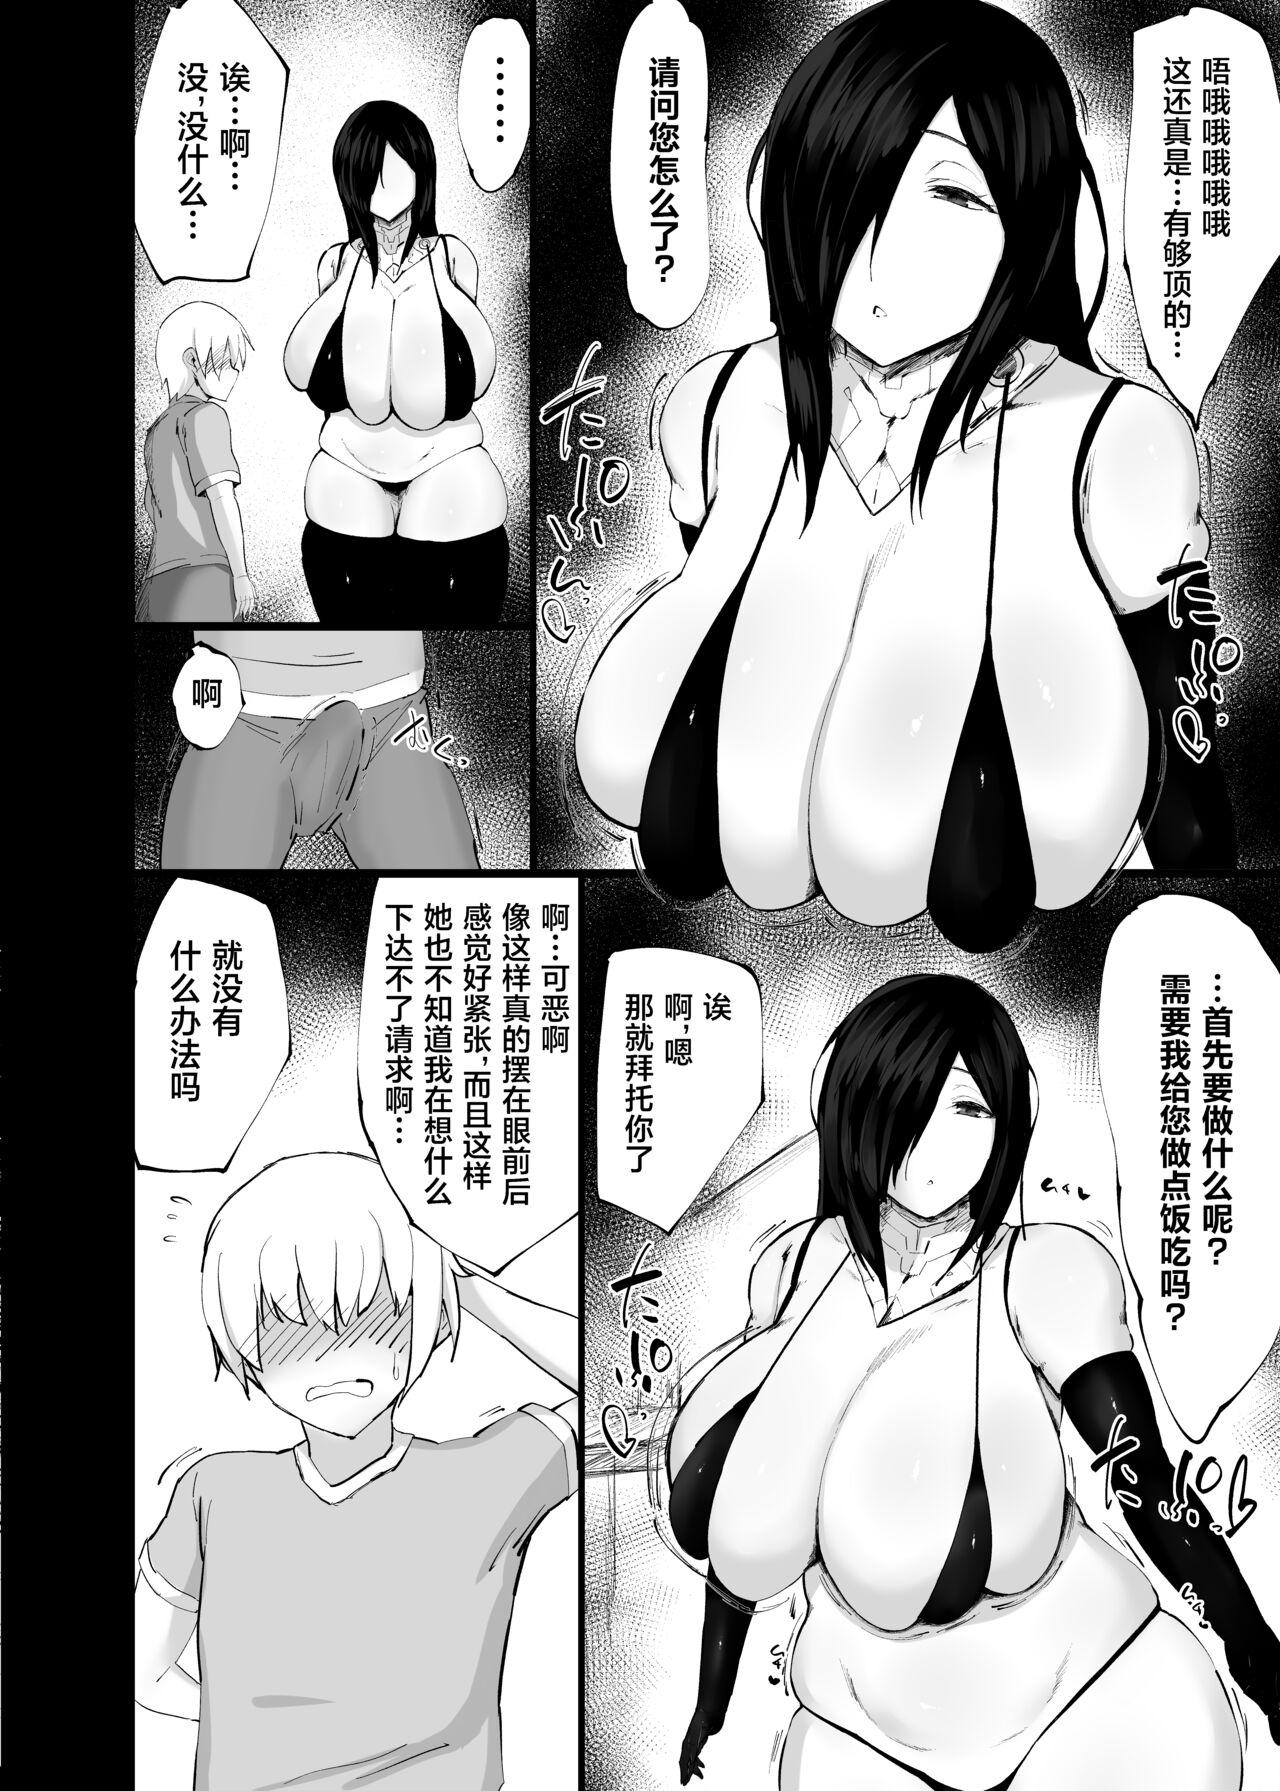 Bisex Andoroido kattara etchi sugite ahe-ra sa reru hanashi Imvu - Page 4